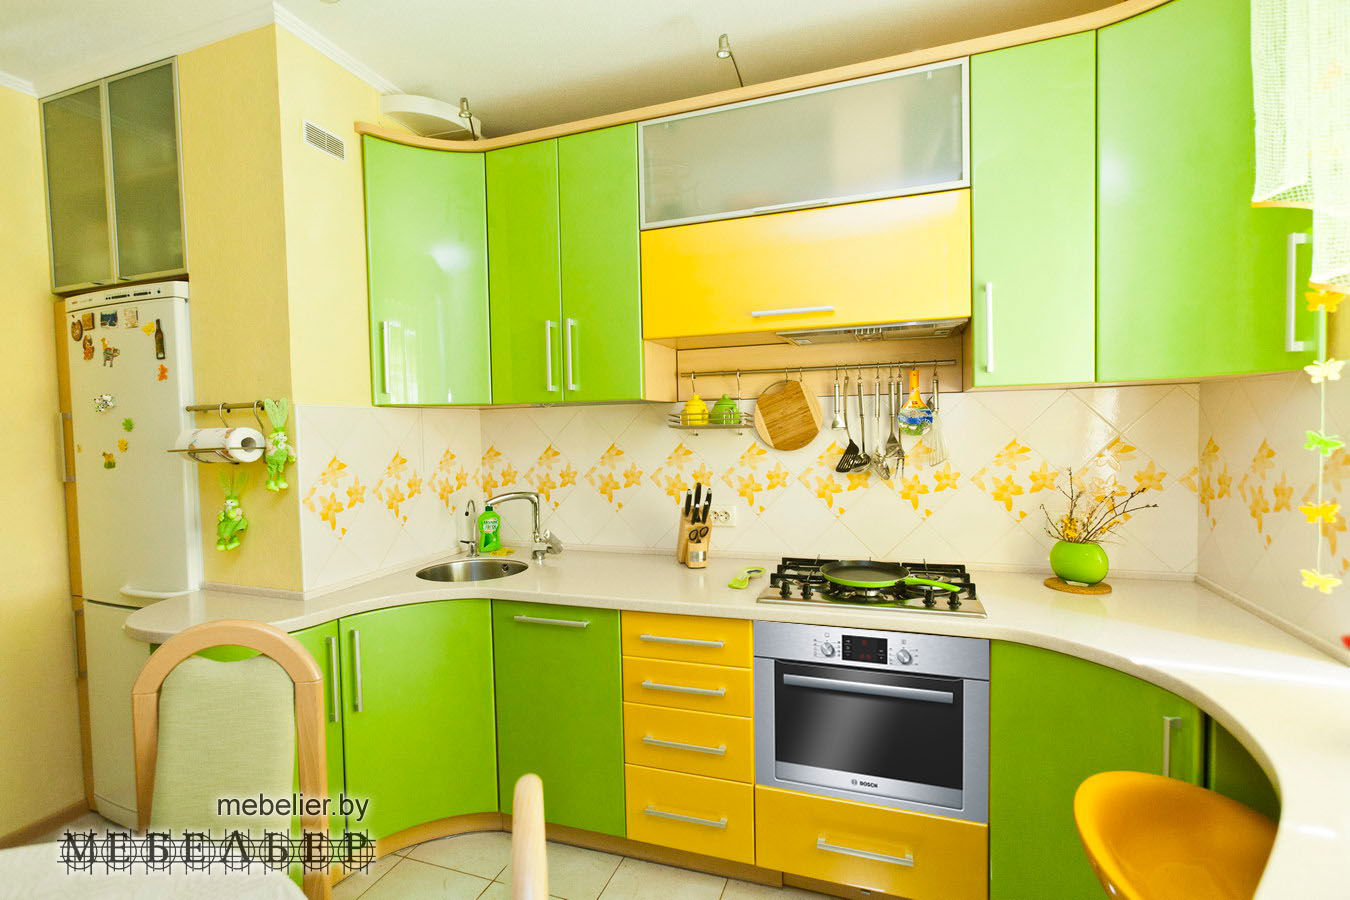 Желто зеленая кухня. Кухня в зеленых тонах. Кухня в желто зеленых тонах. Кухня зеленого цвета. Кухонный гарнитур лимонного цвета.